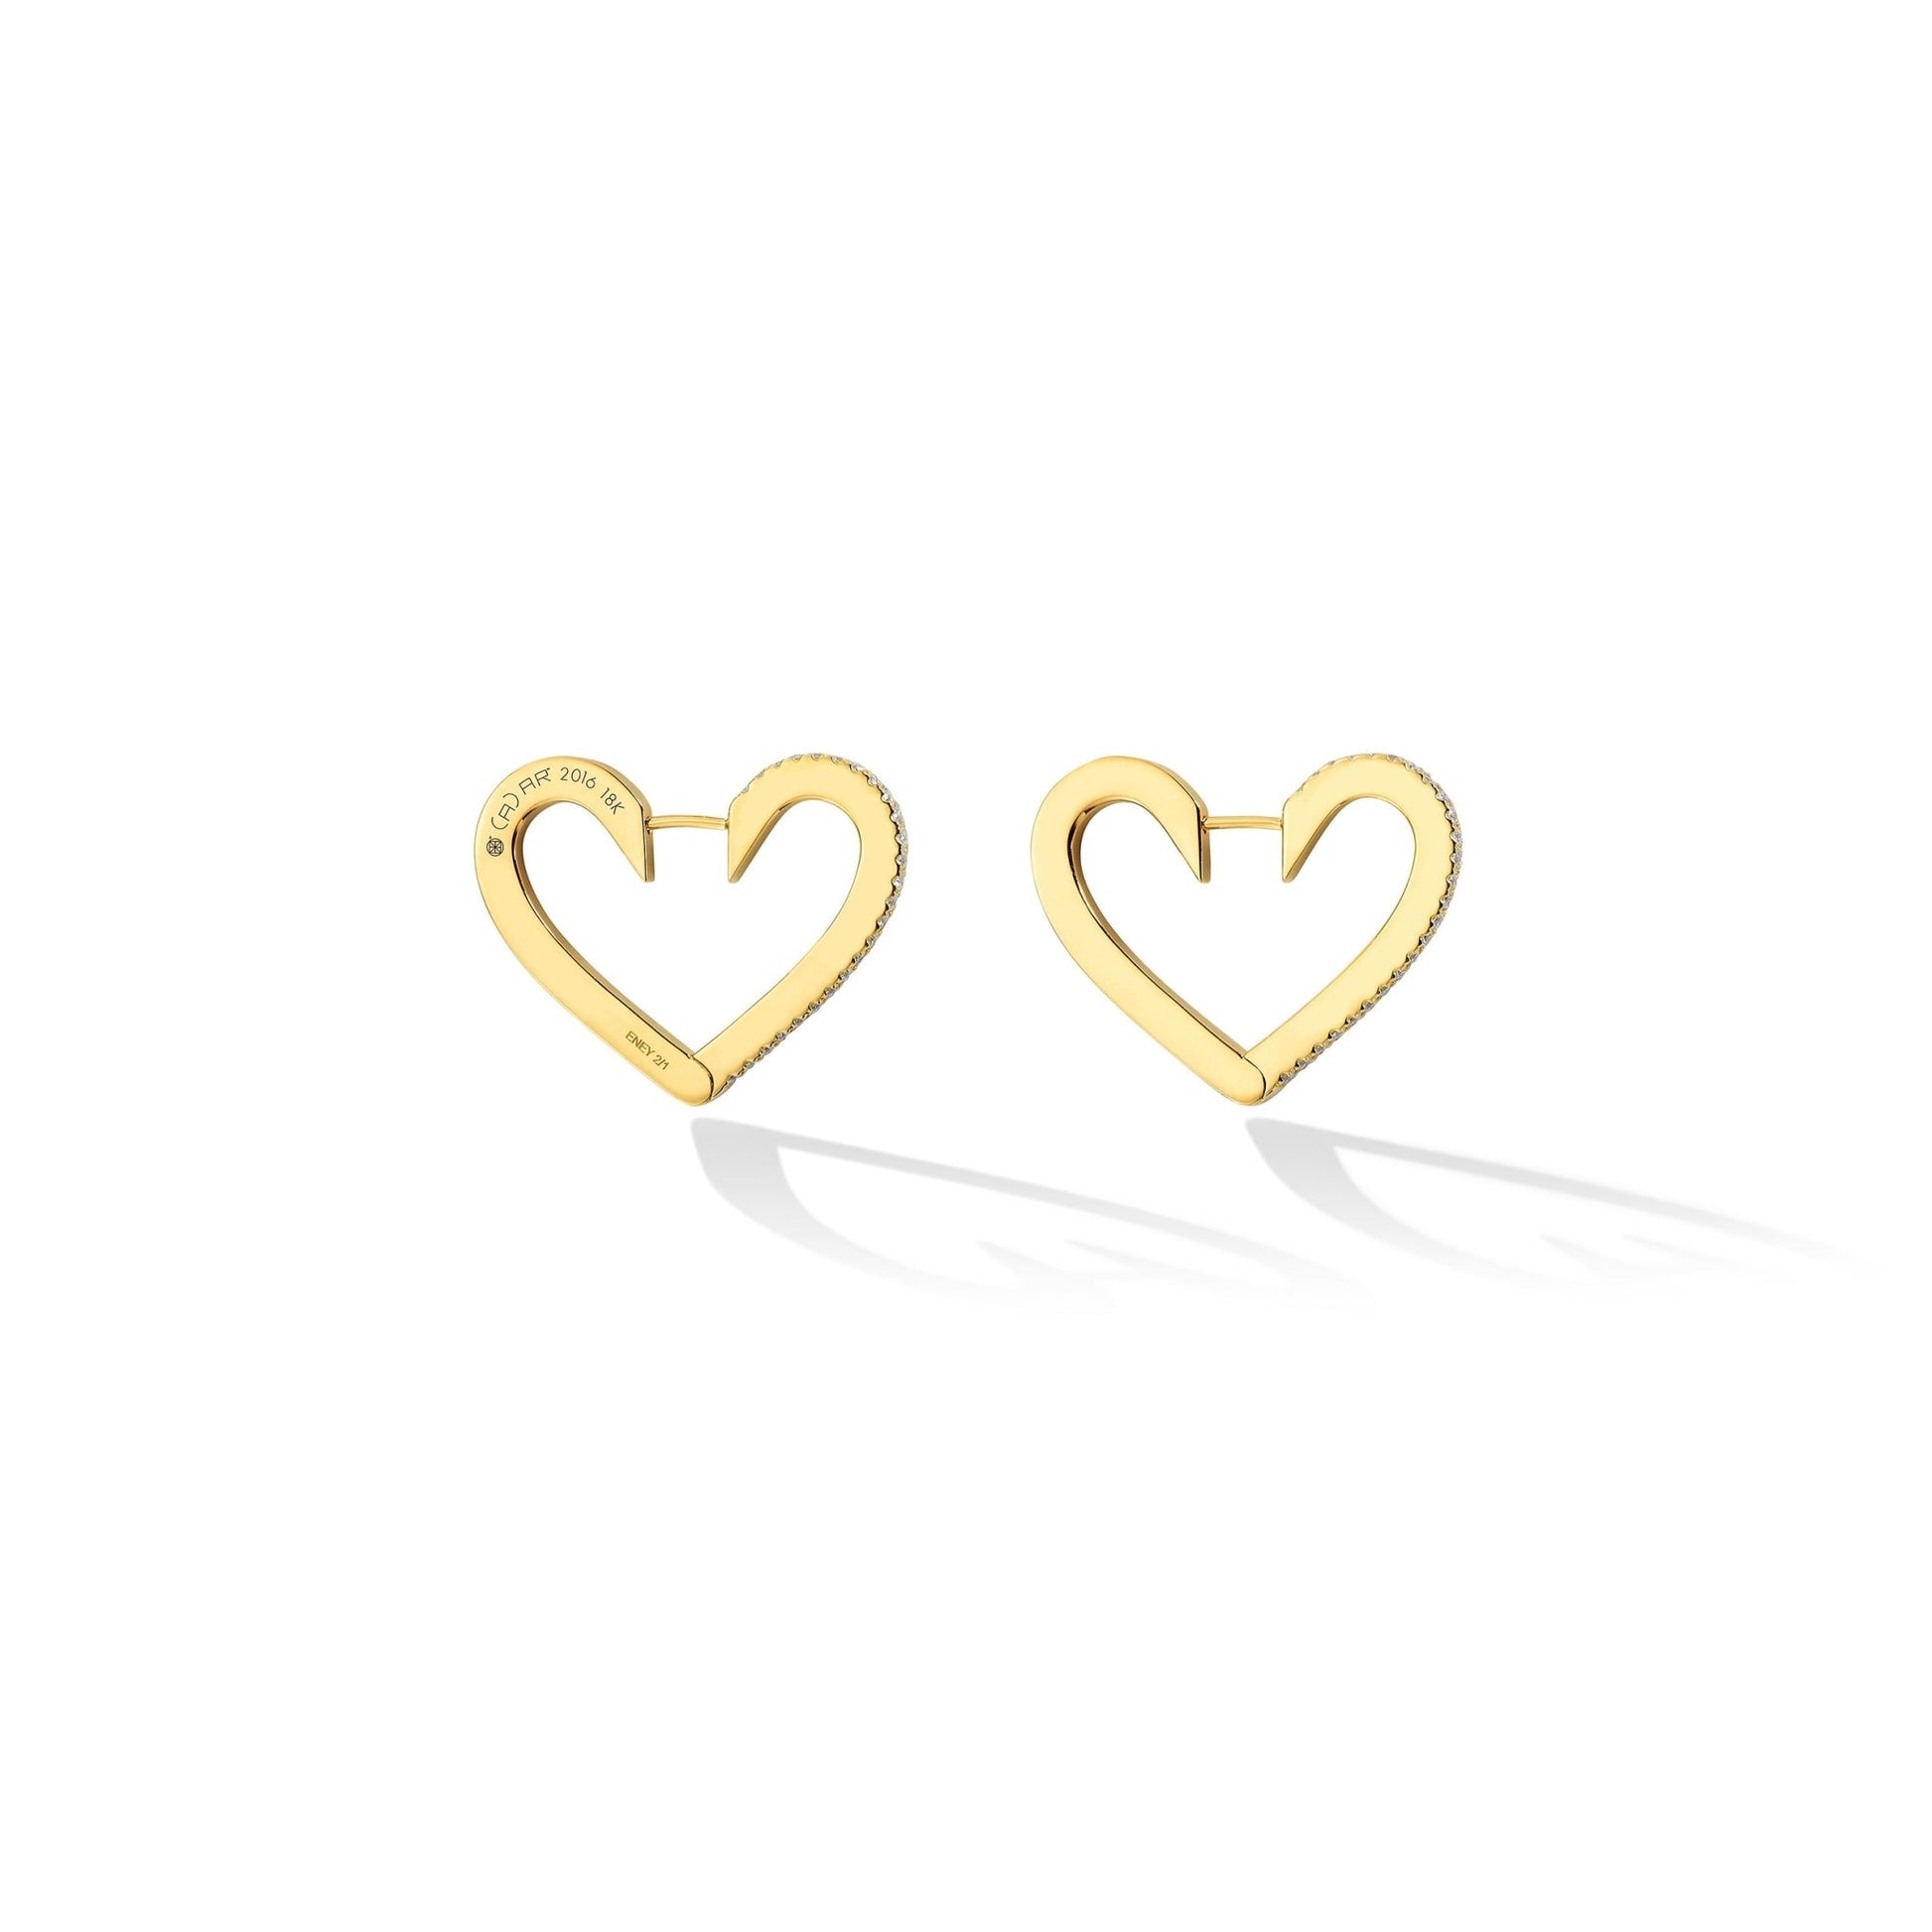 Heart 14k Yellow Gold Stud Earrings in White Diamonds